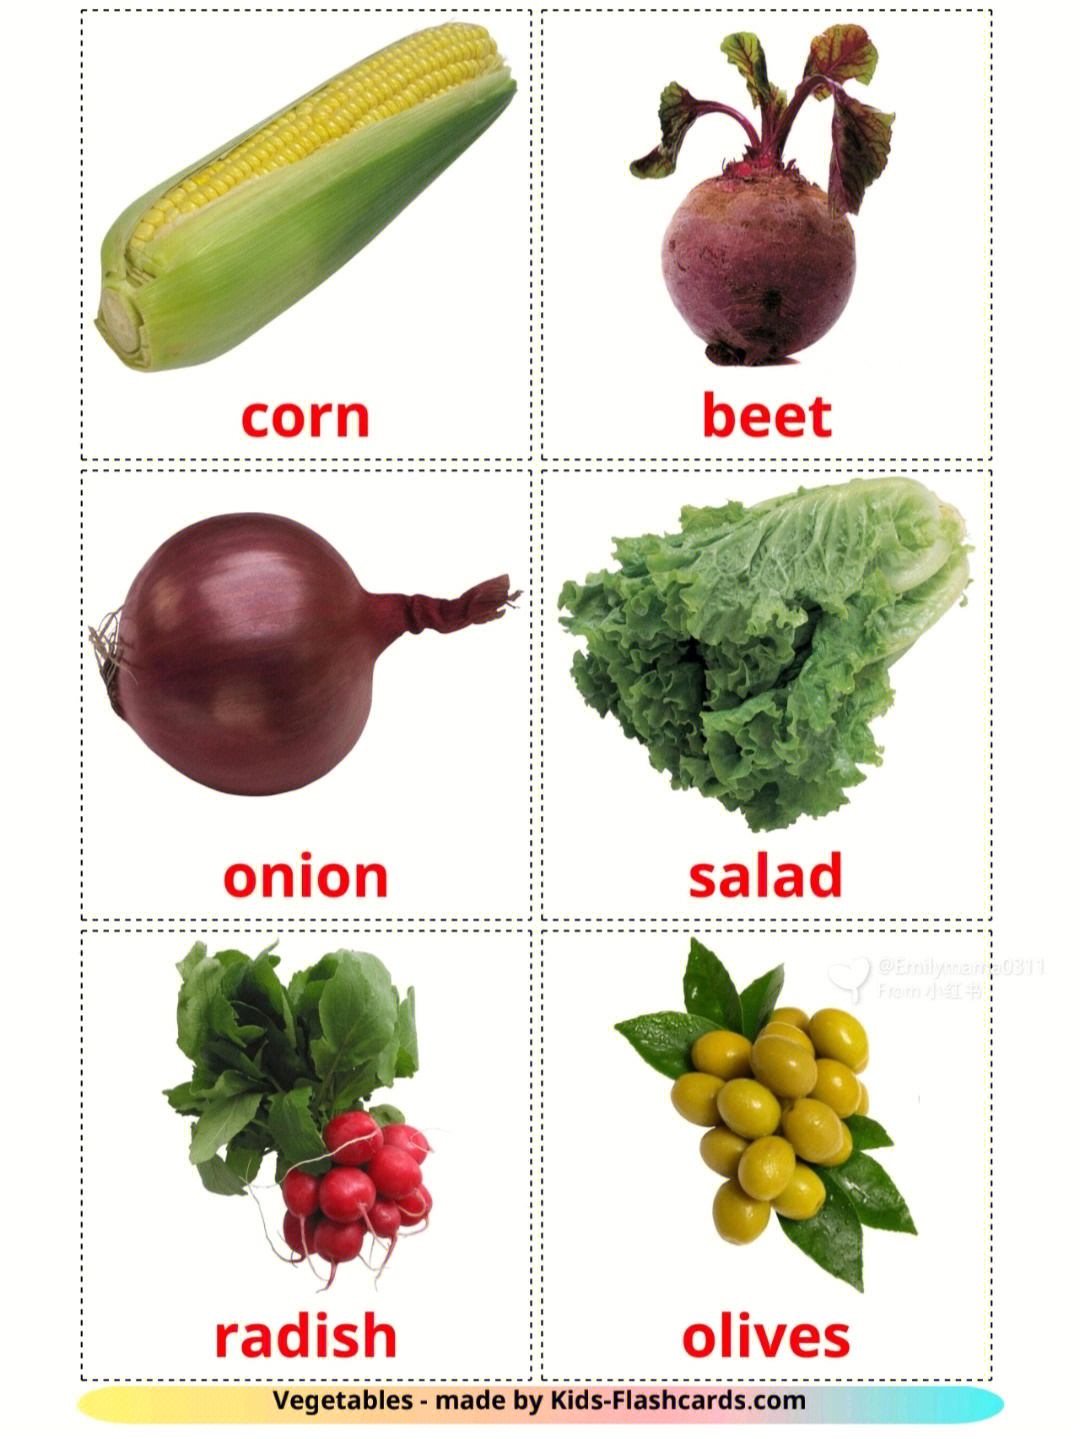 蔬菜英语单词大全100个图片